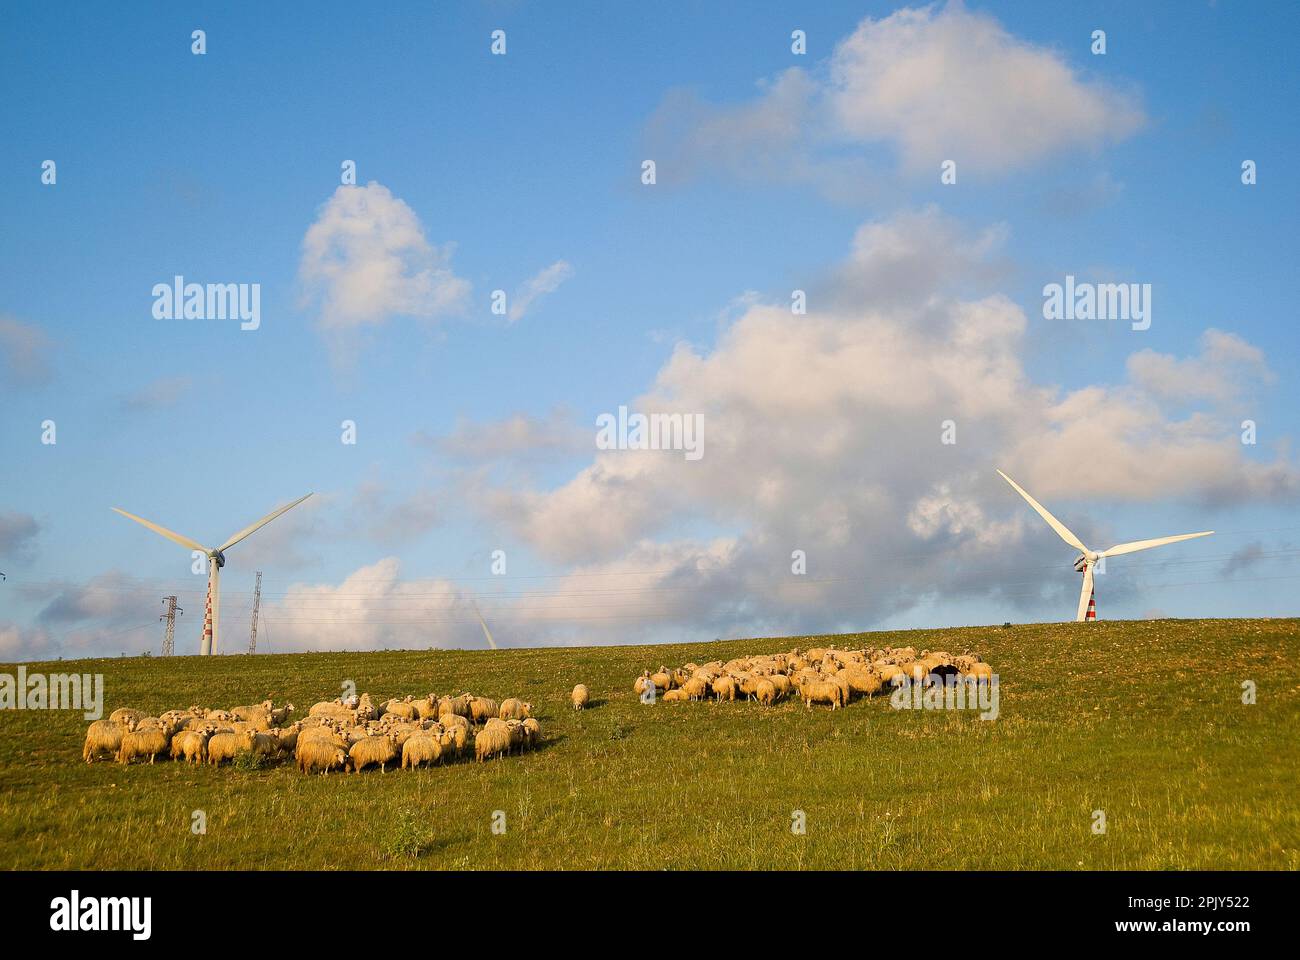 Gregge di pecore al pascolo e pâle eoliche sullo sfondo. Porto Torres, Sassari, Sardegna, Italia Sheeps. Sardaigne, Italie Banque D'Images